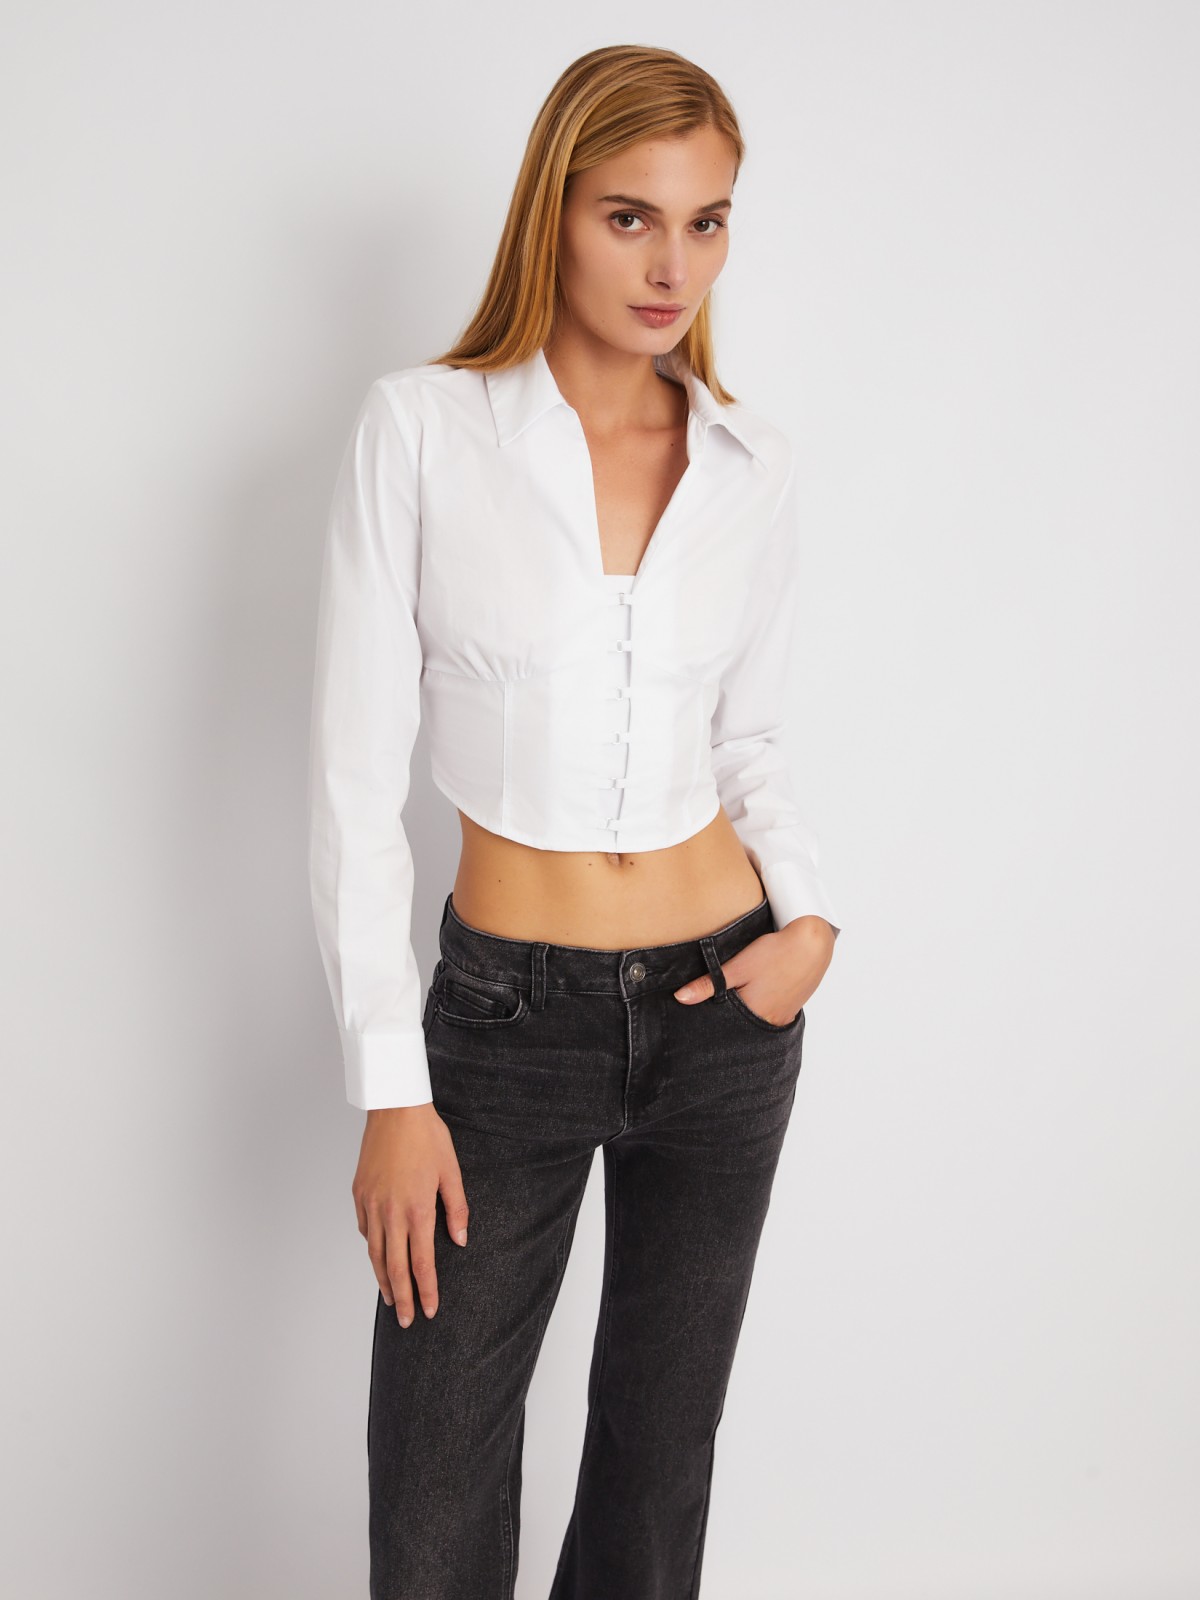 Укороченный топ-рубашка с имитацией корсета zolla 024111159271, цвет белый, размер XS